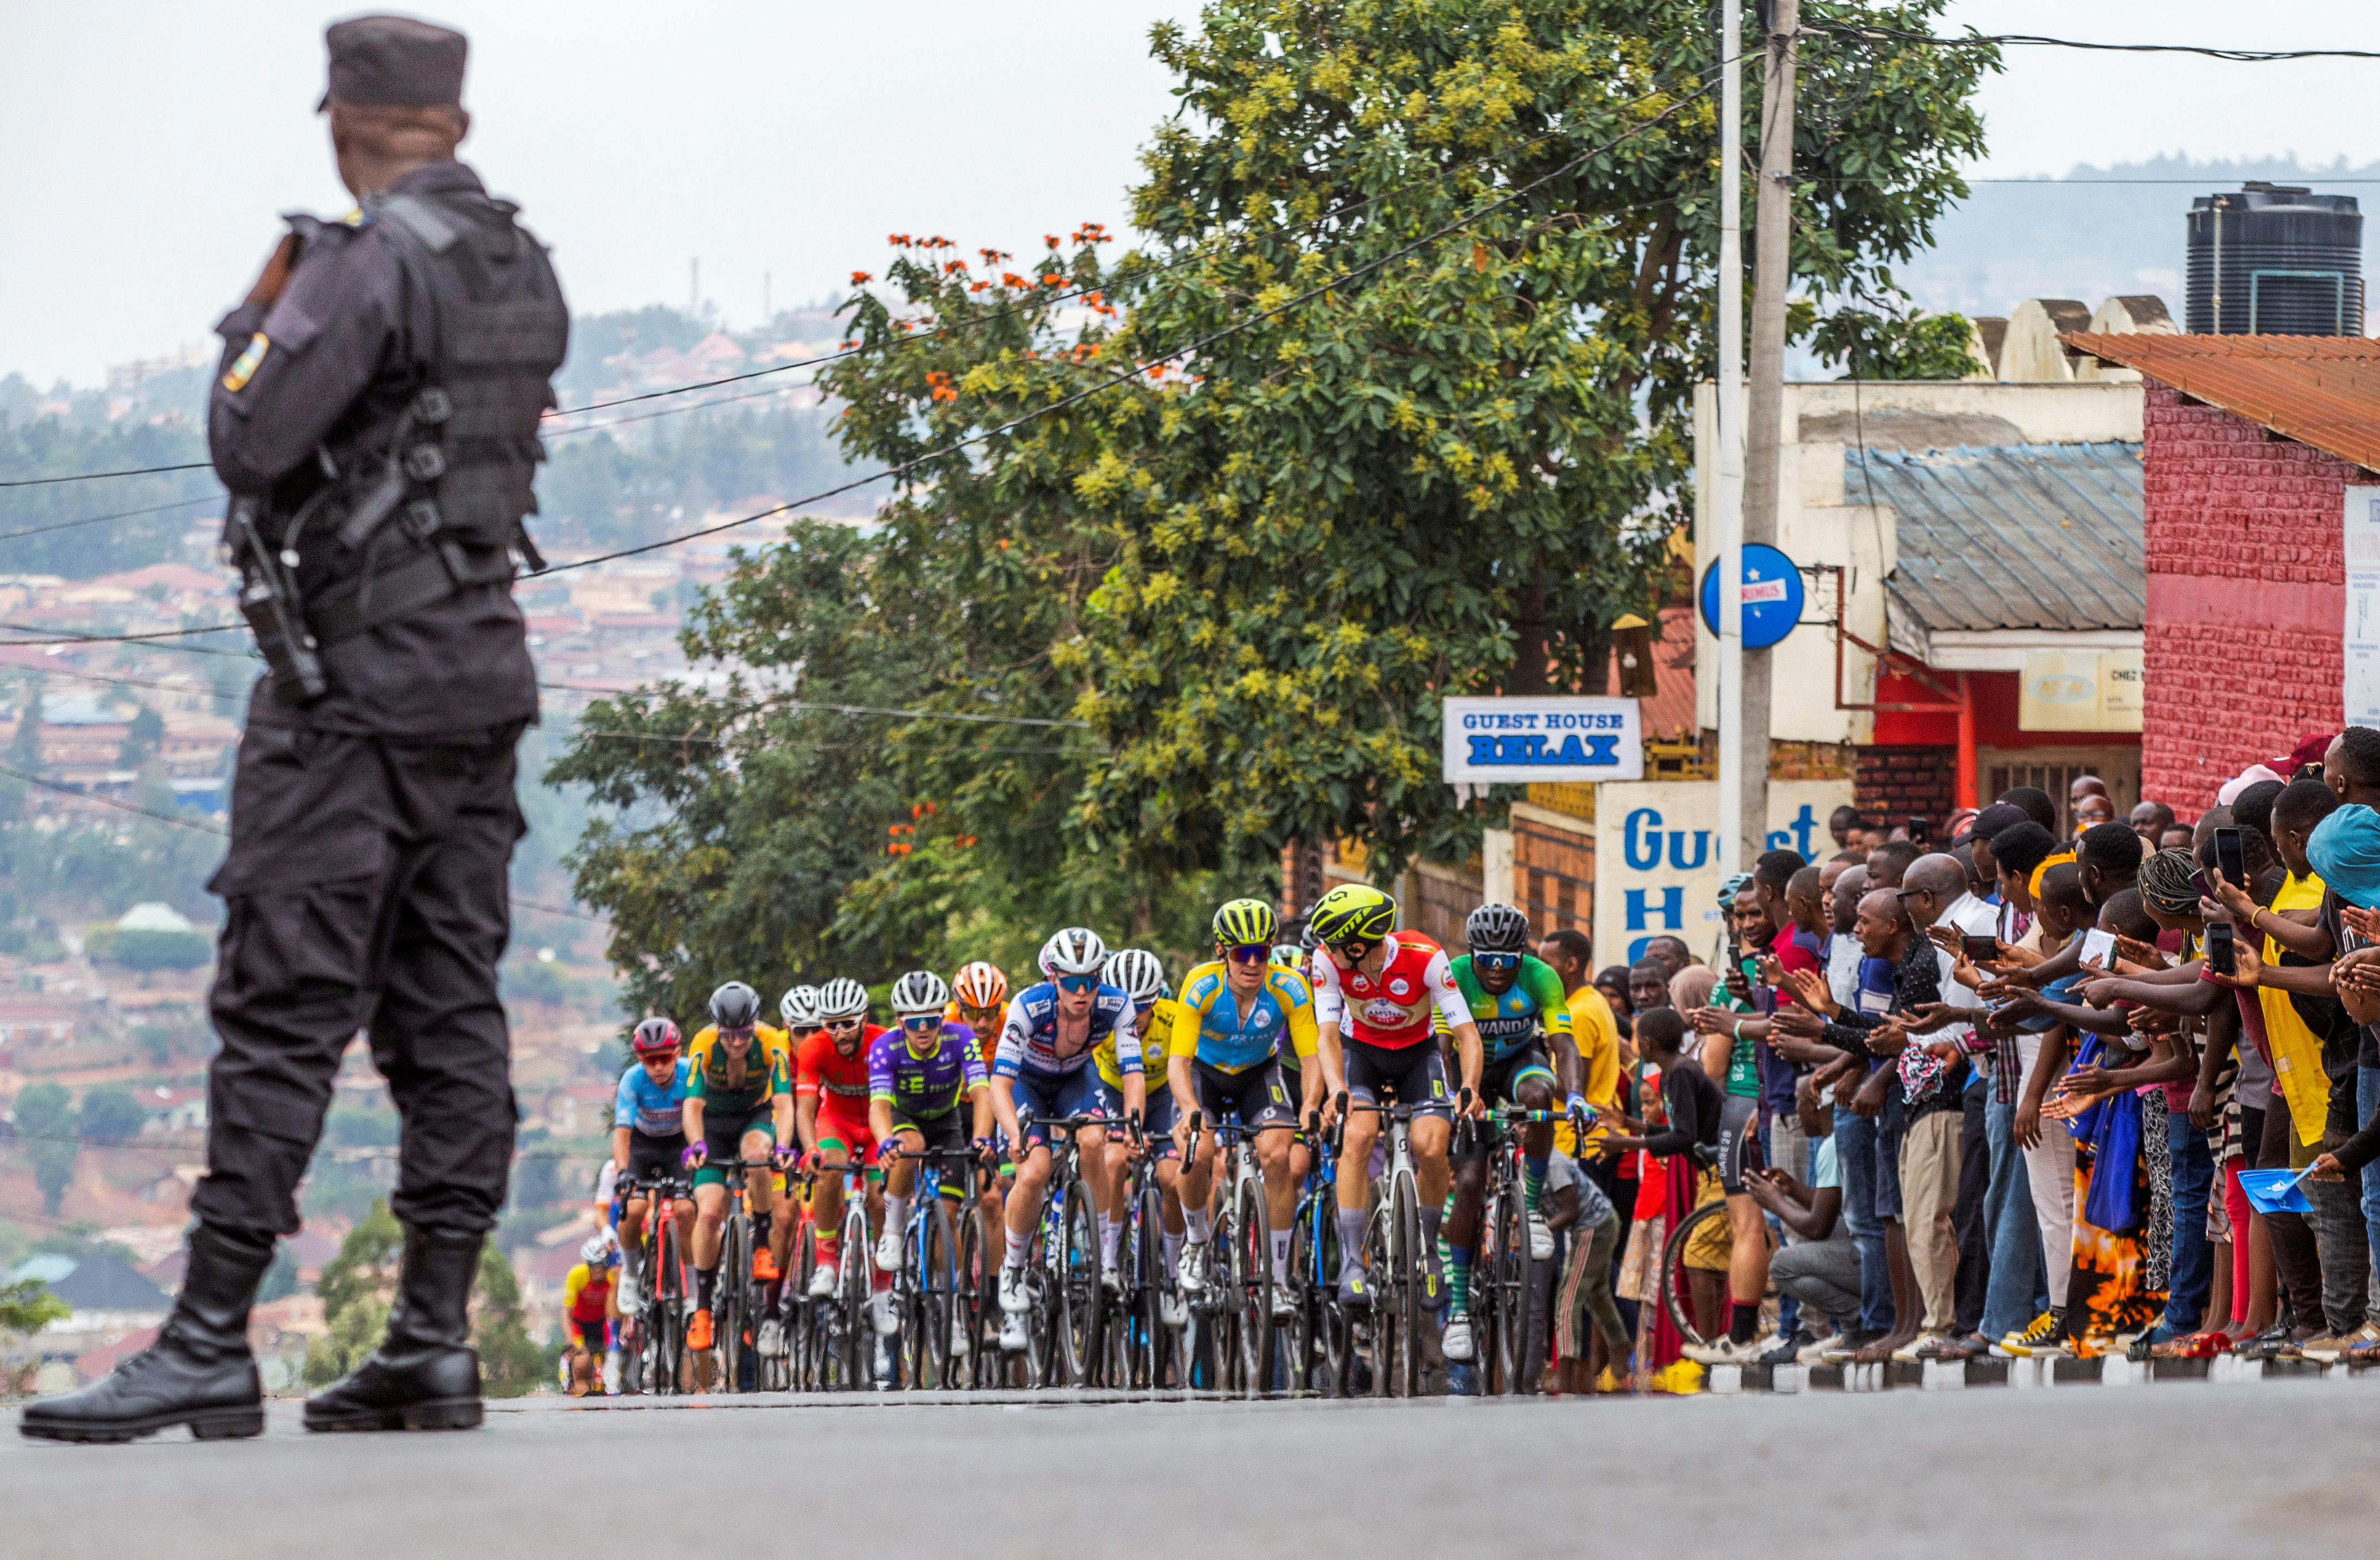 르완다 수도 키갈리에서 열린 투르 드 르완다 사이클 대회 결승 경기에 많은 참가자와 관중에 참가한 가운데 경찰이 대회를 지켜보고 있다. 사진은 기사 내용과 무관함. 2023.2.25 로이터 연합뉴스